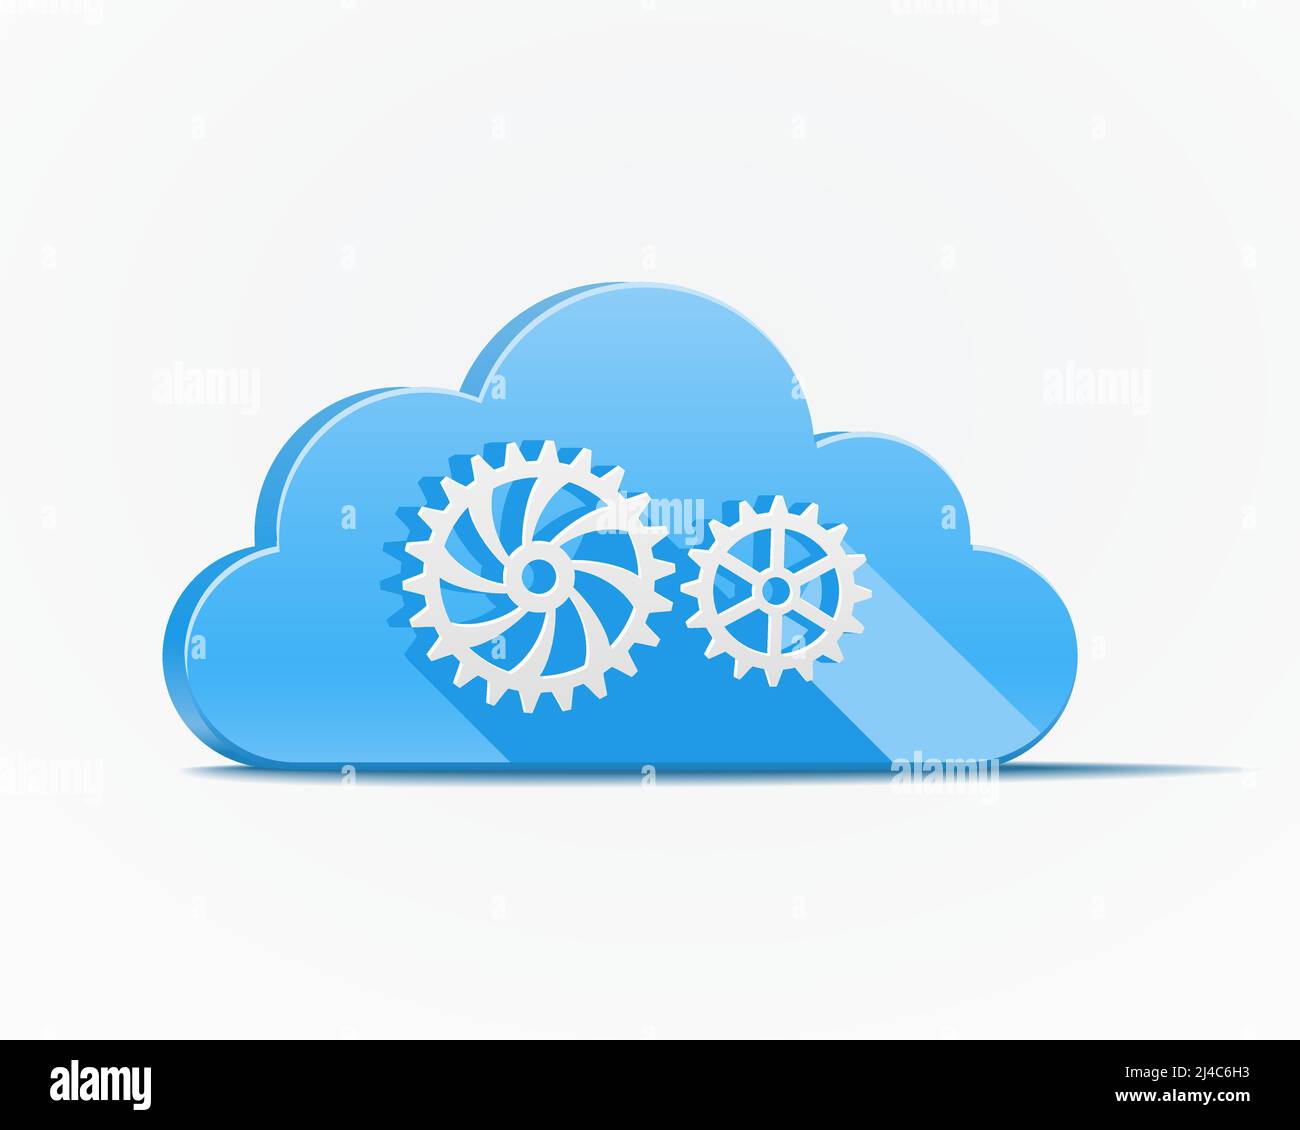 Blaue Wolke mit Zahnrädern oder Zahnrädern, die Cloud Computing darstellen Industrie und Mechanisierung Vektor Illustration Stock Vektor